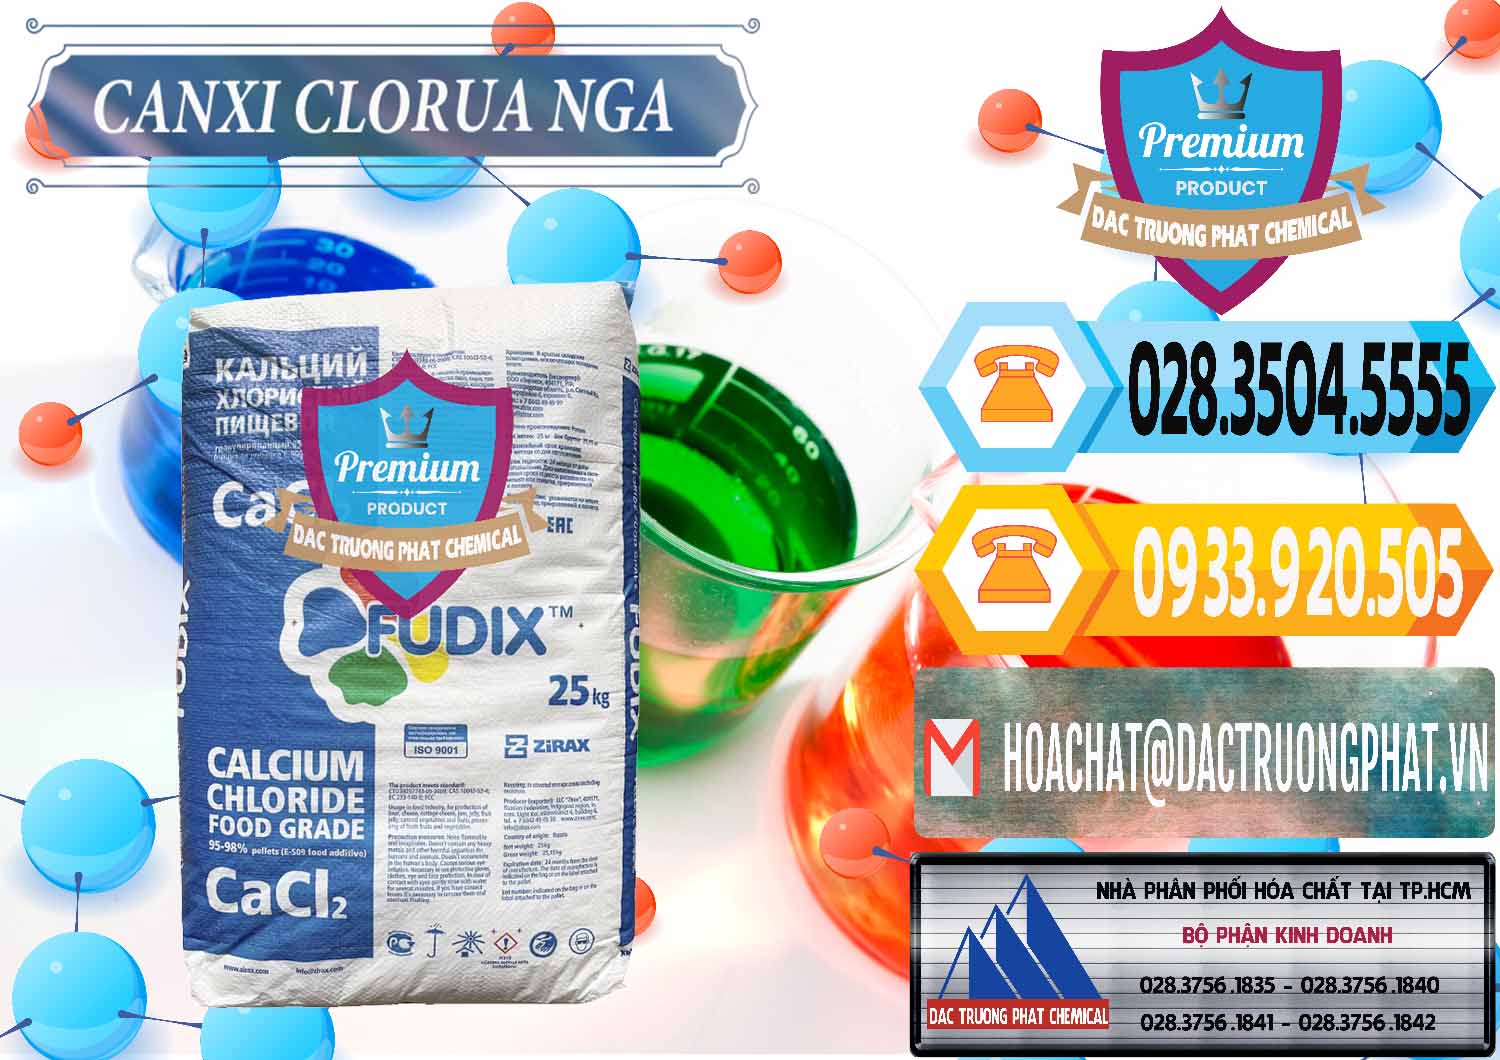 Nơi chuyên bán _ phân phối CaCl2 – Canxi Clorua Nga Russia - 0430 - Nơi bán & phân phối hóa chất tại TP.HCM - hoachattayrua.net